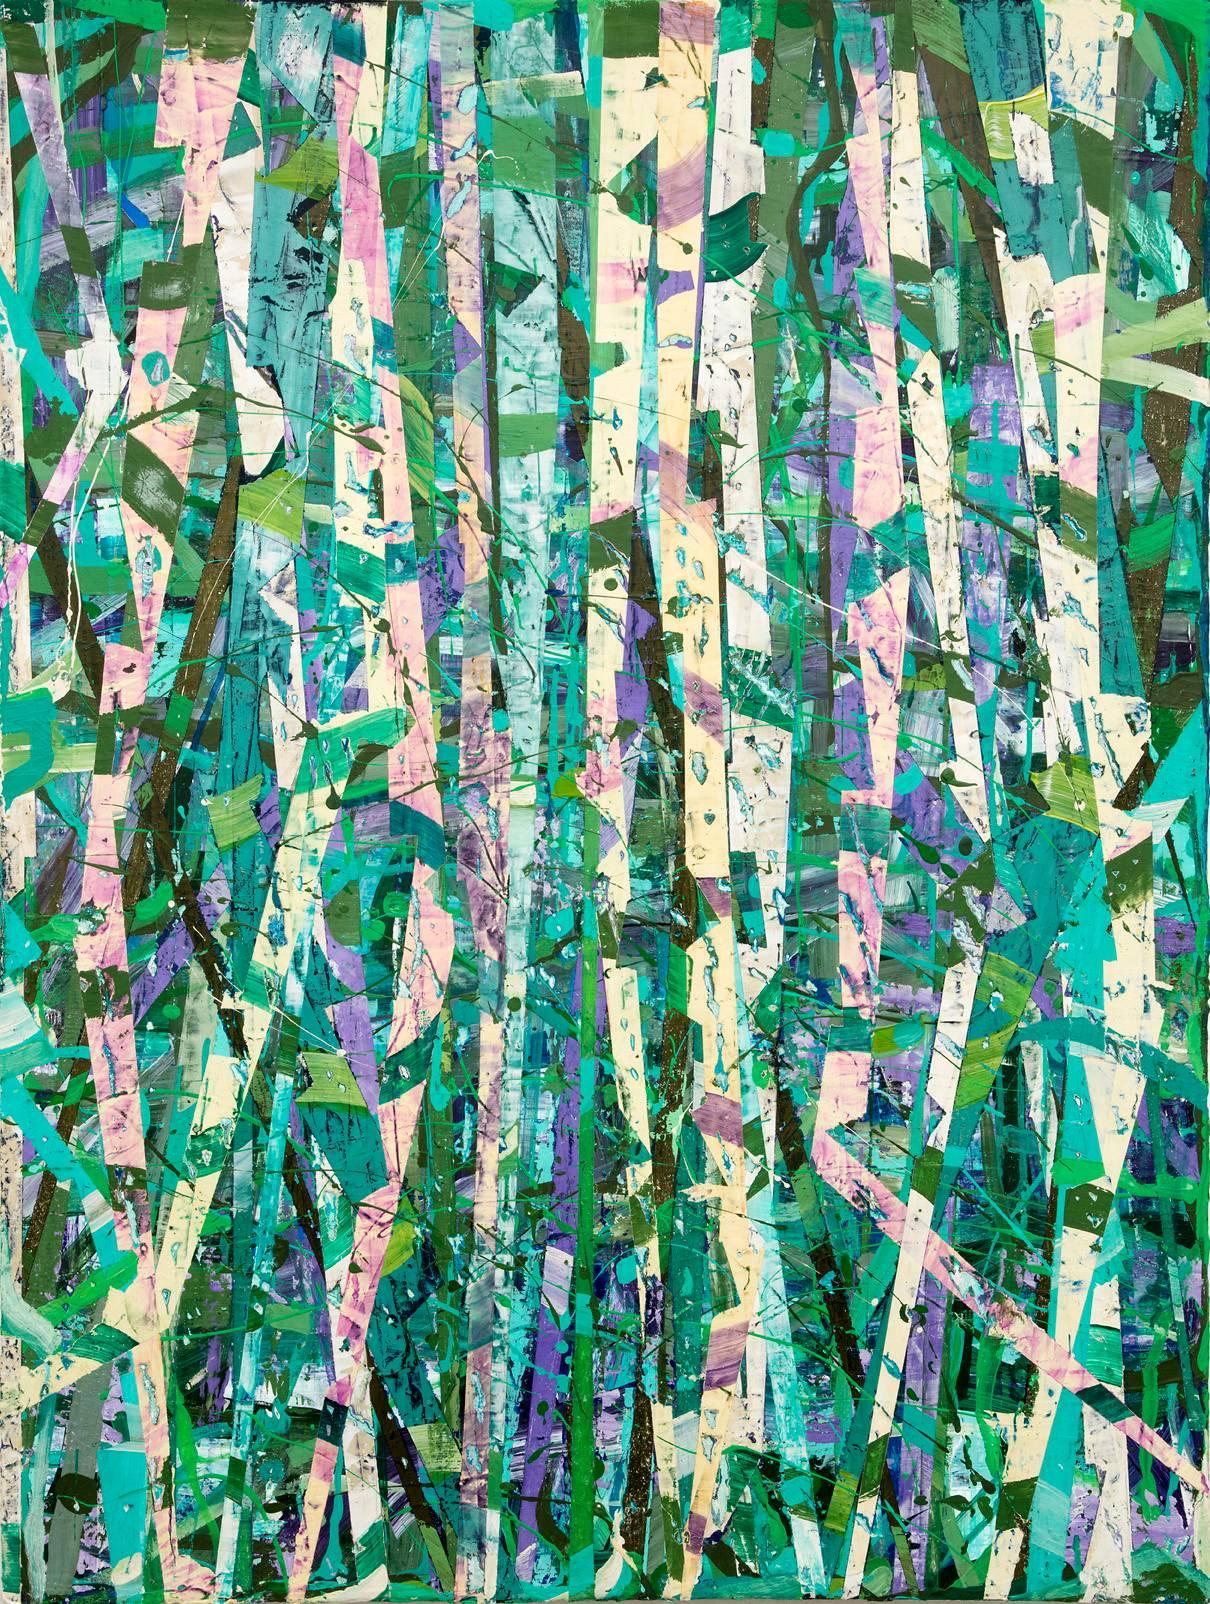 Taghkanic Creek, 14 mai (peinture abstraite moderne sur toile en vert et sarcelle)